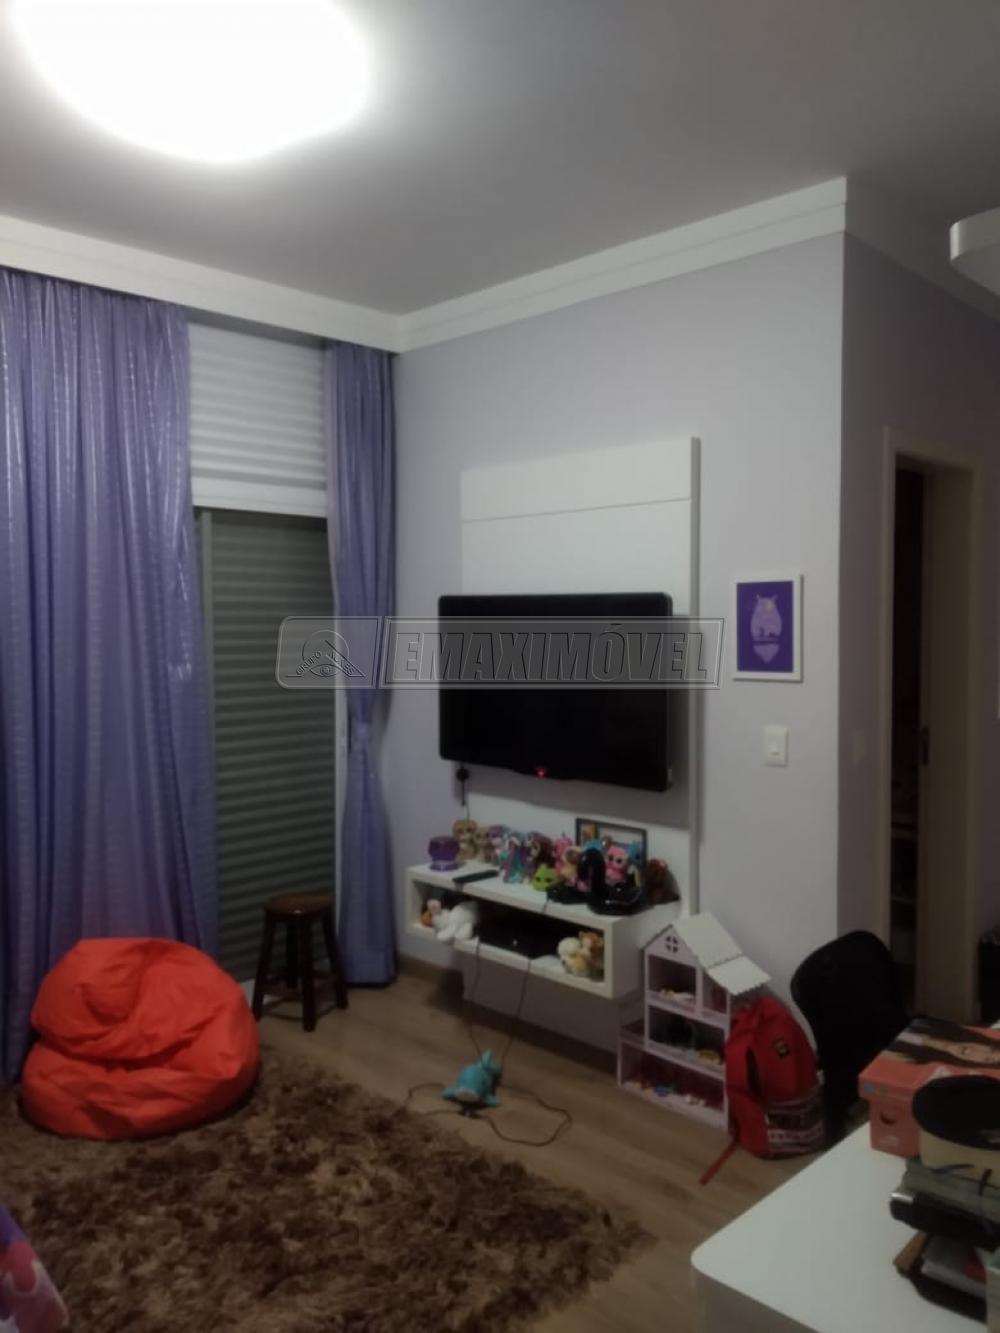 Comprar Casa / em Condomínios em Sorocaba R$ 1.500.000,00 - Foto 22